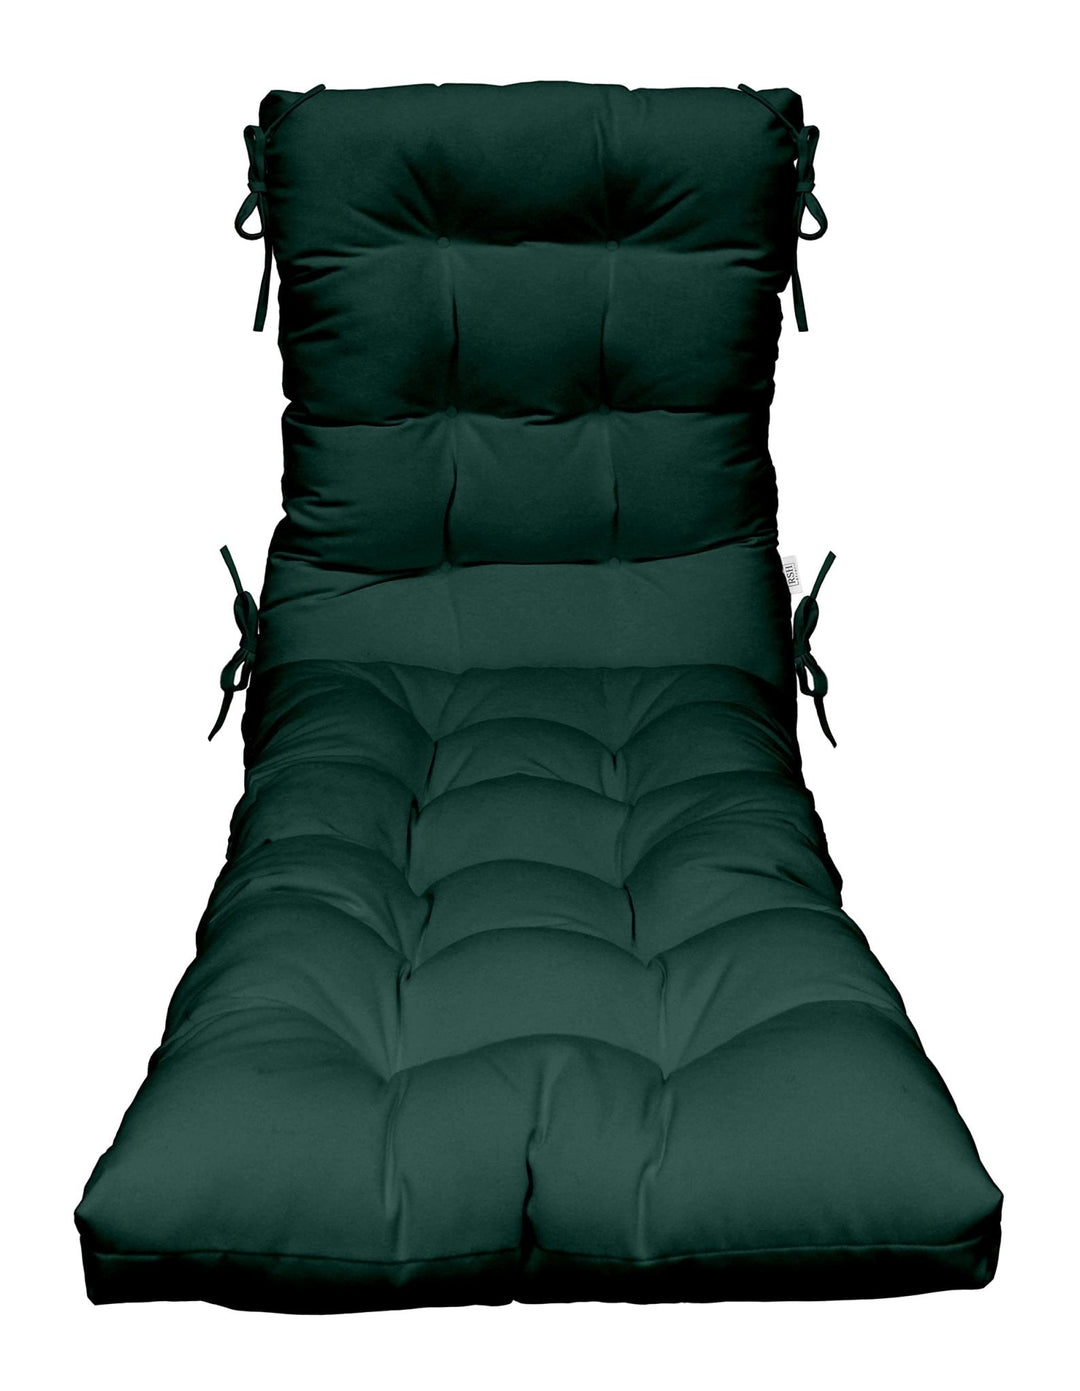 Chaise Lounge Chair Cushion | Tufted | 72" H x 22" W | Sunbrella Canvas Forest Green - RSH Decor